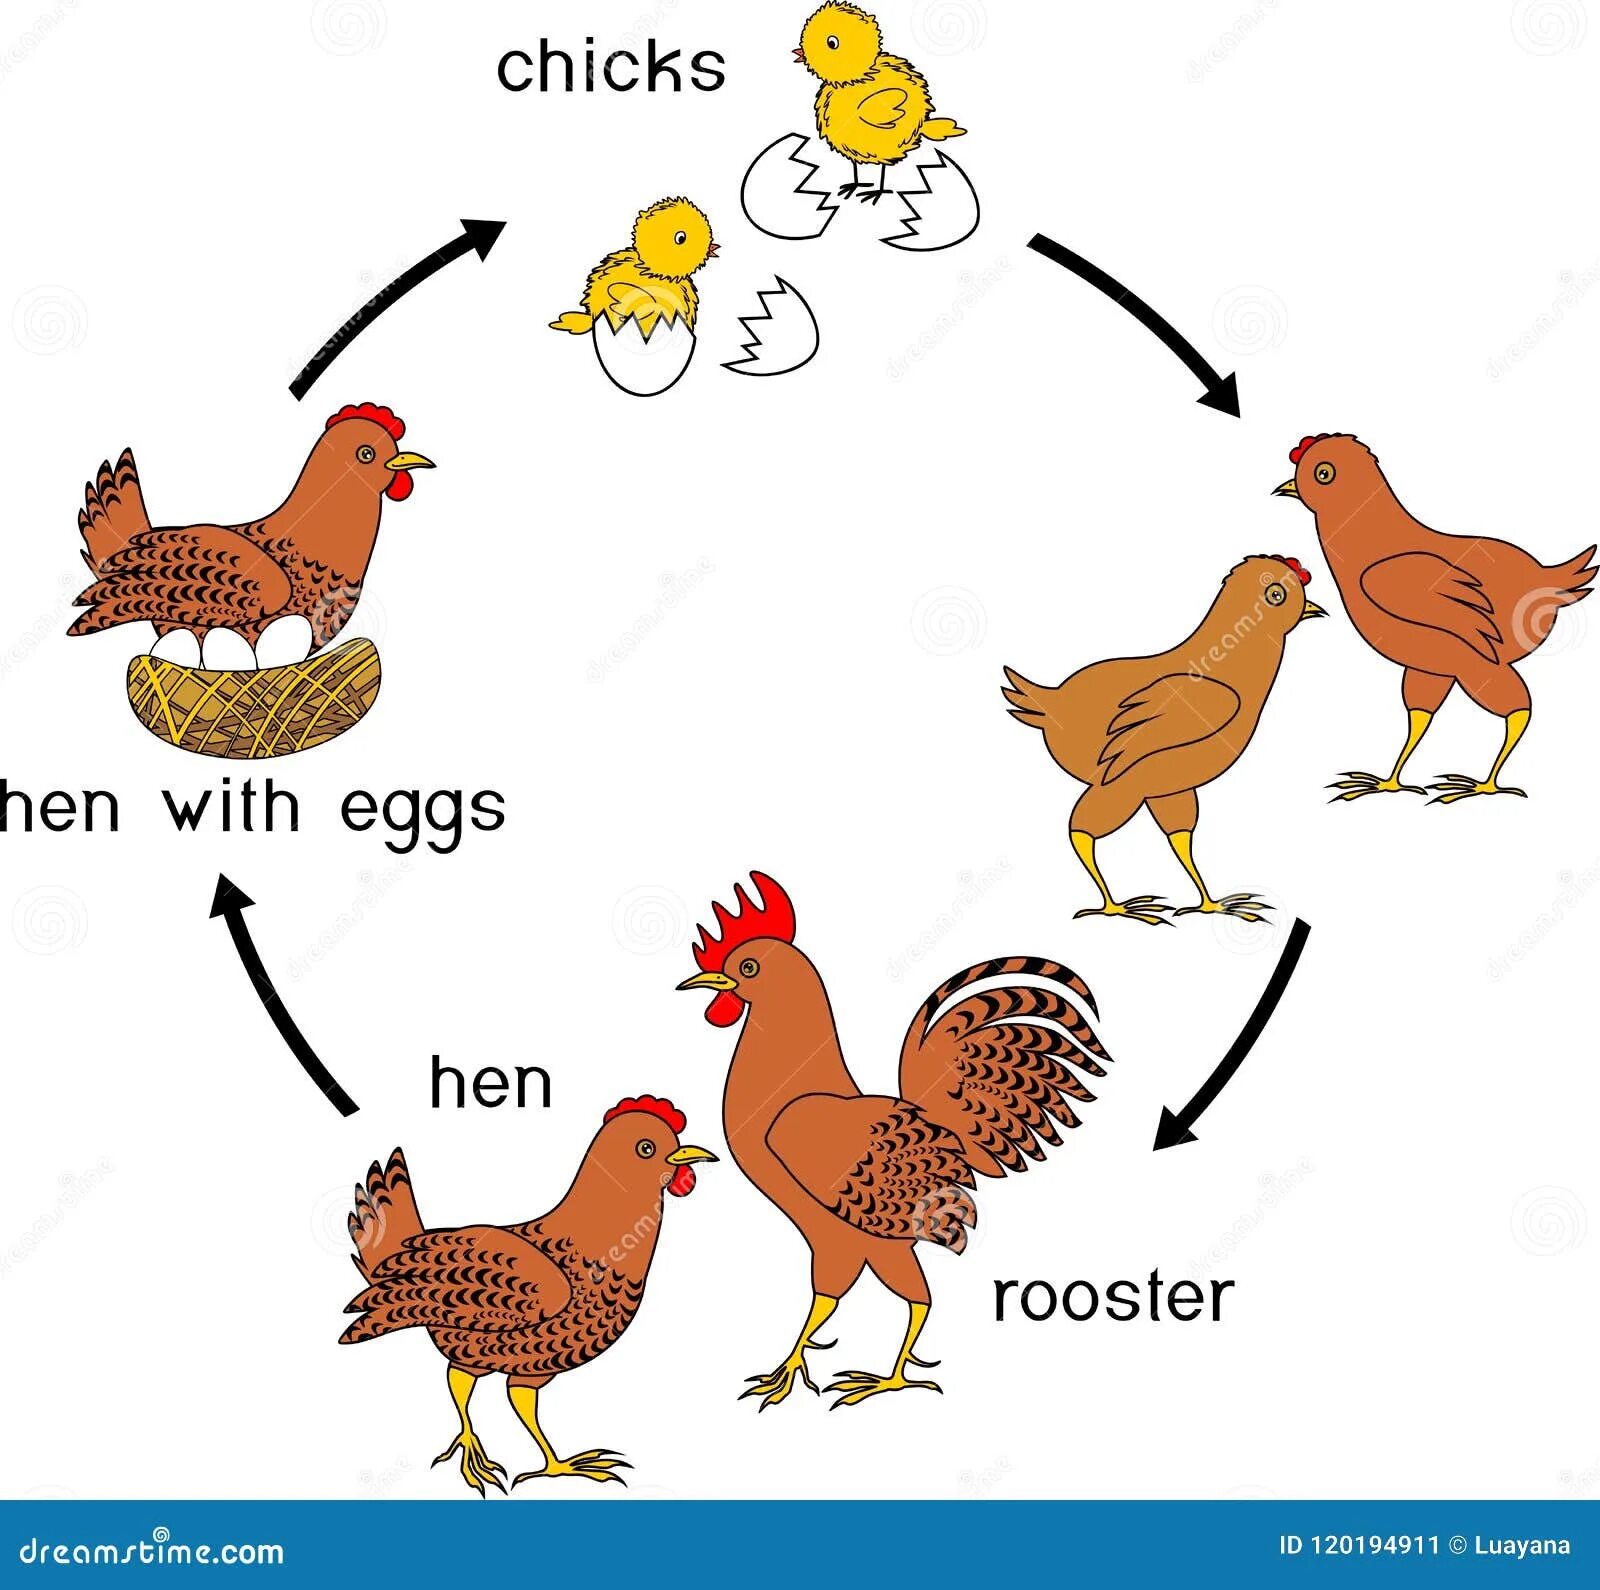 Время по петухам. Стадии развития курицы. Стадии роста курицы. Цикл развития птиц. Цикл развития курицы.